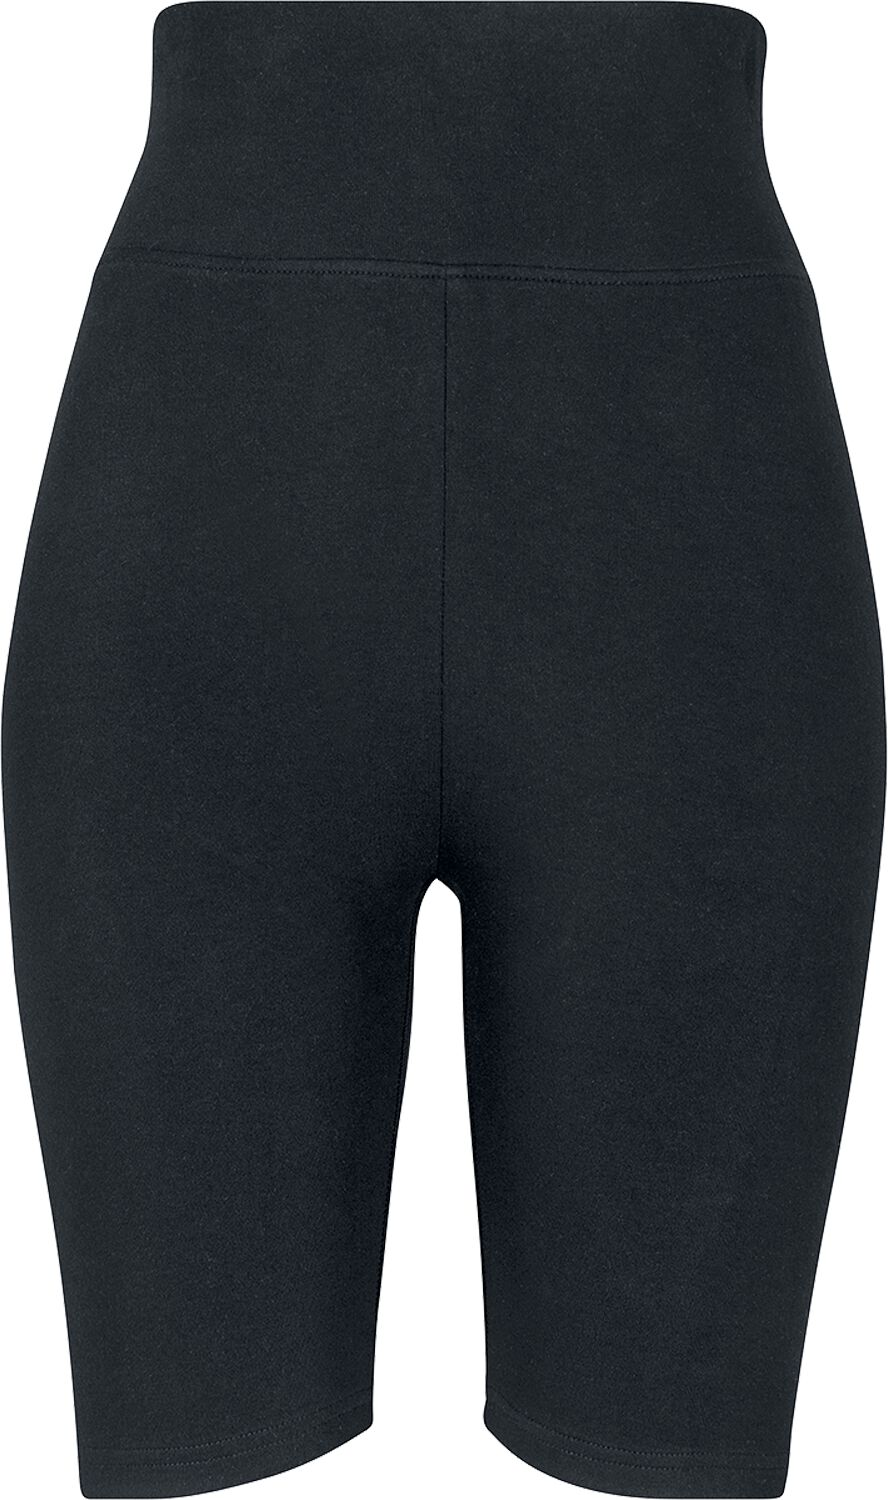 Urban Classics Short - Ladies High Waist Cycle Shorts - XS bis XL - für Damen - Größe M - schwarz